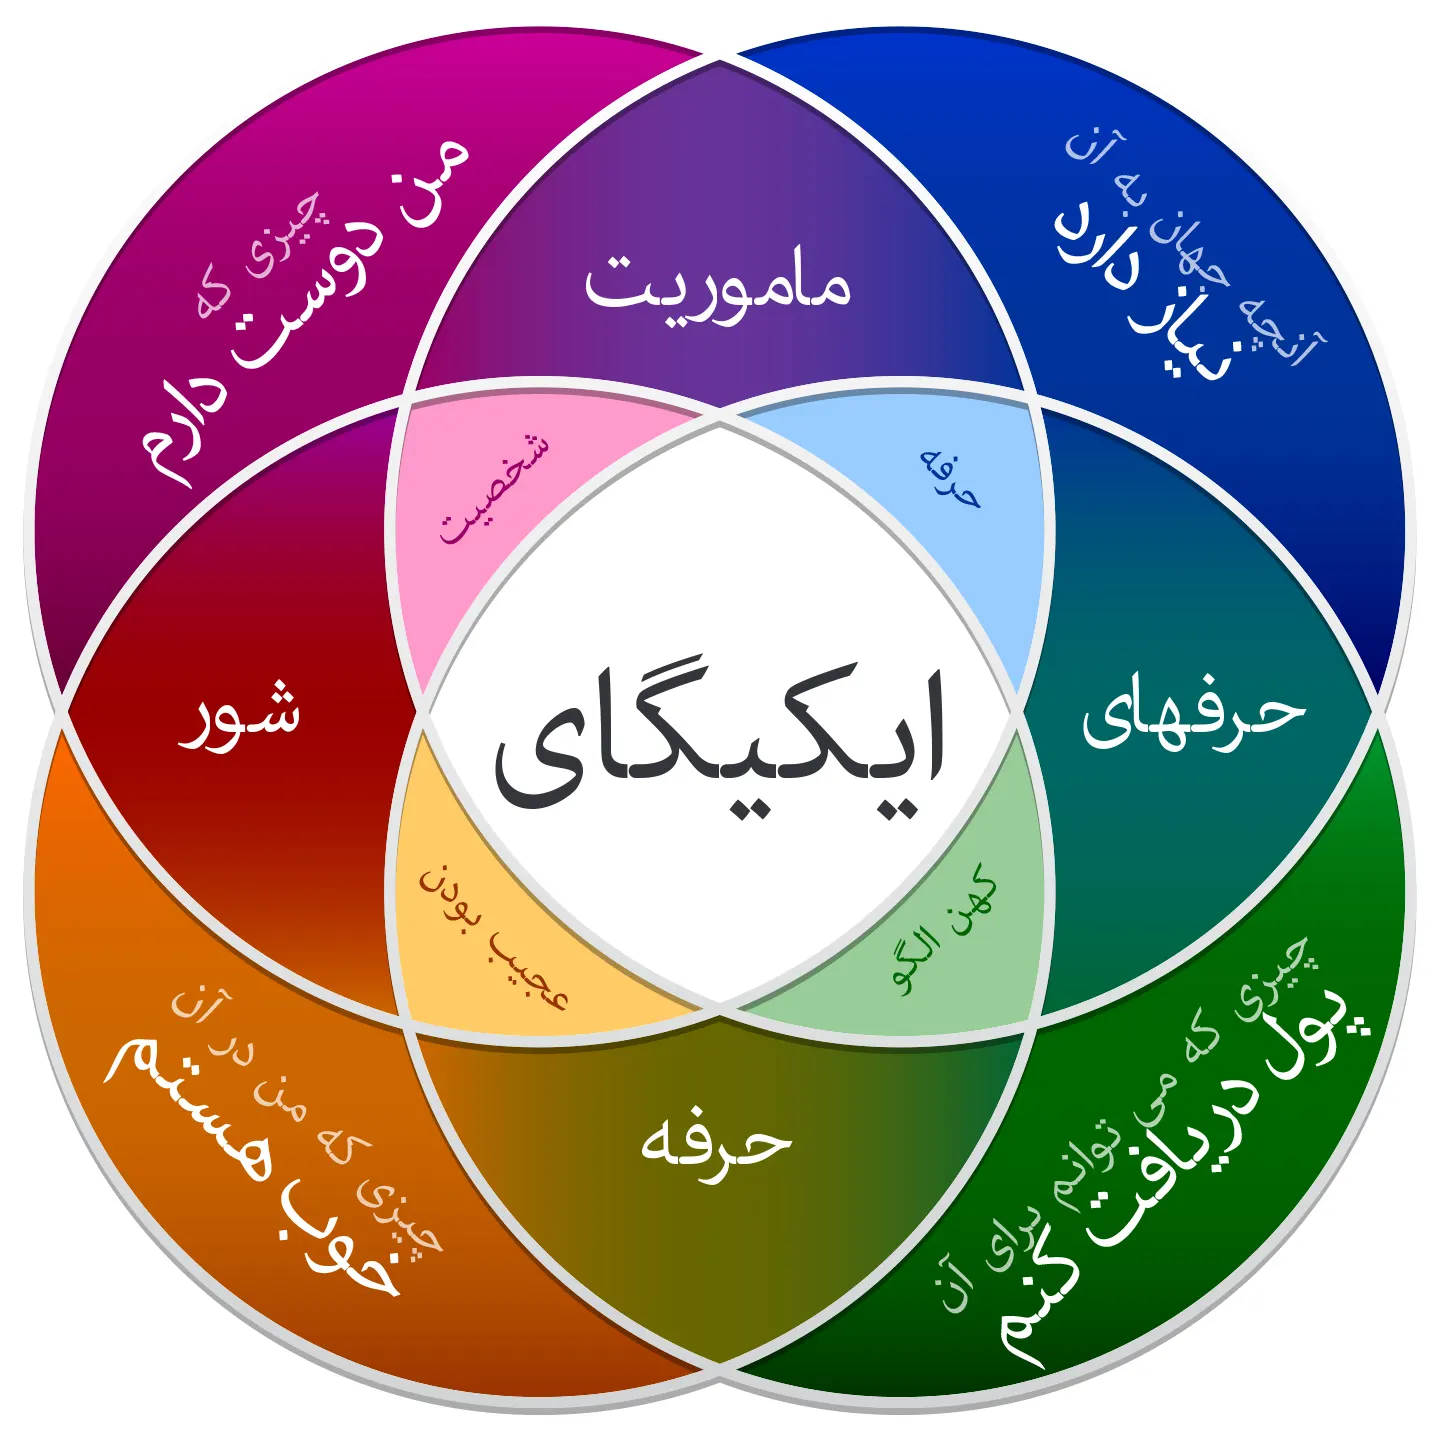 ایکیگای به زبان فارسی ikigai